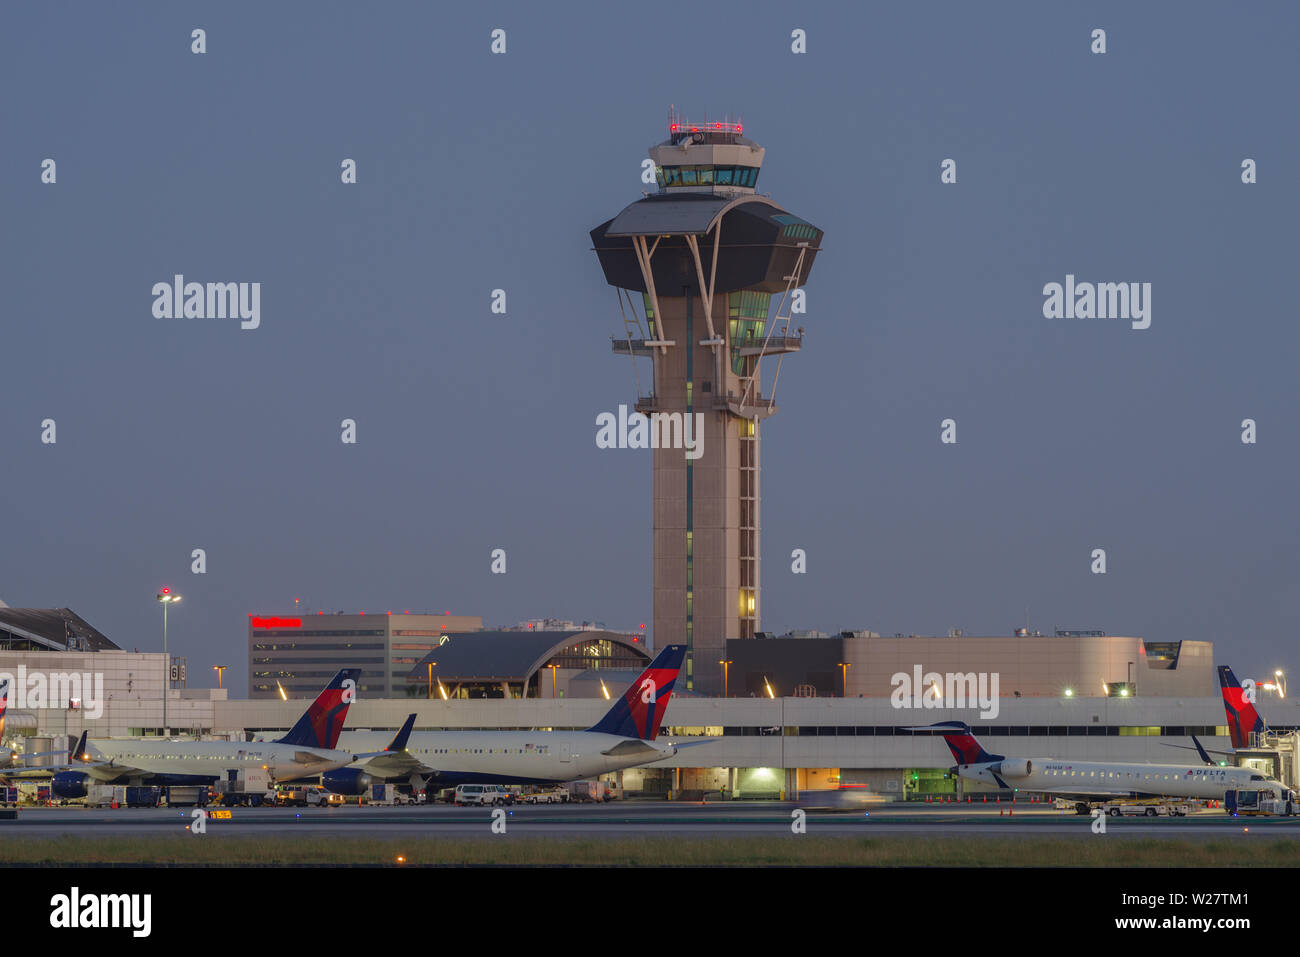 Bild der Control Tower und Delta Air Lines jets am Tor am internationalen Flughafen von Los Angeles, LAX, in der Dämmerung. Stockfoto